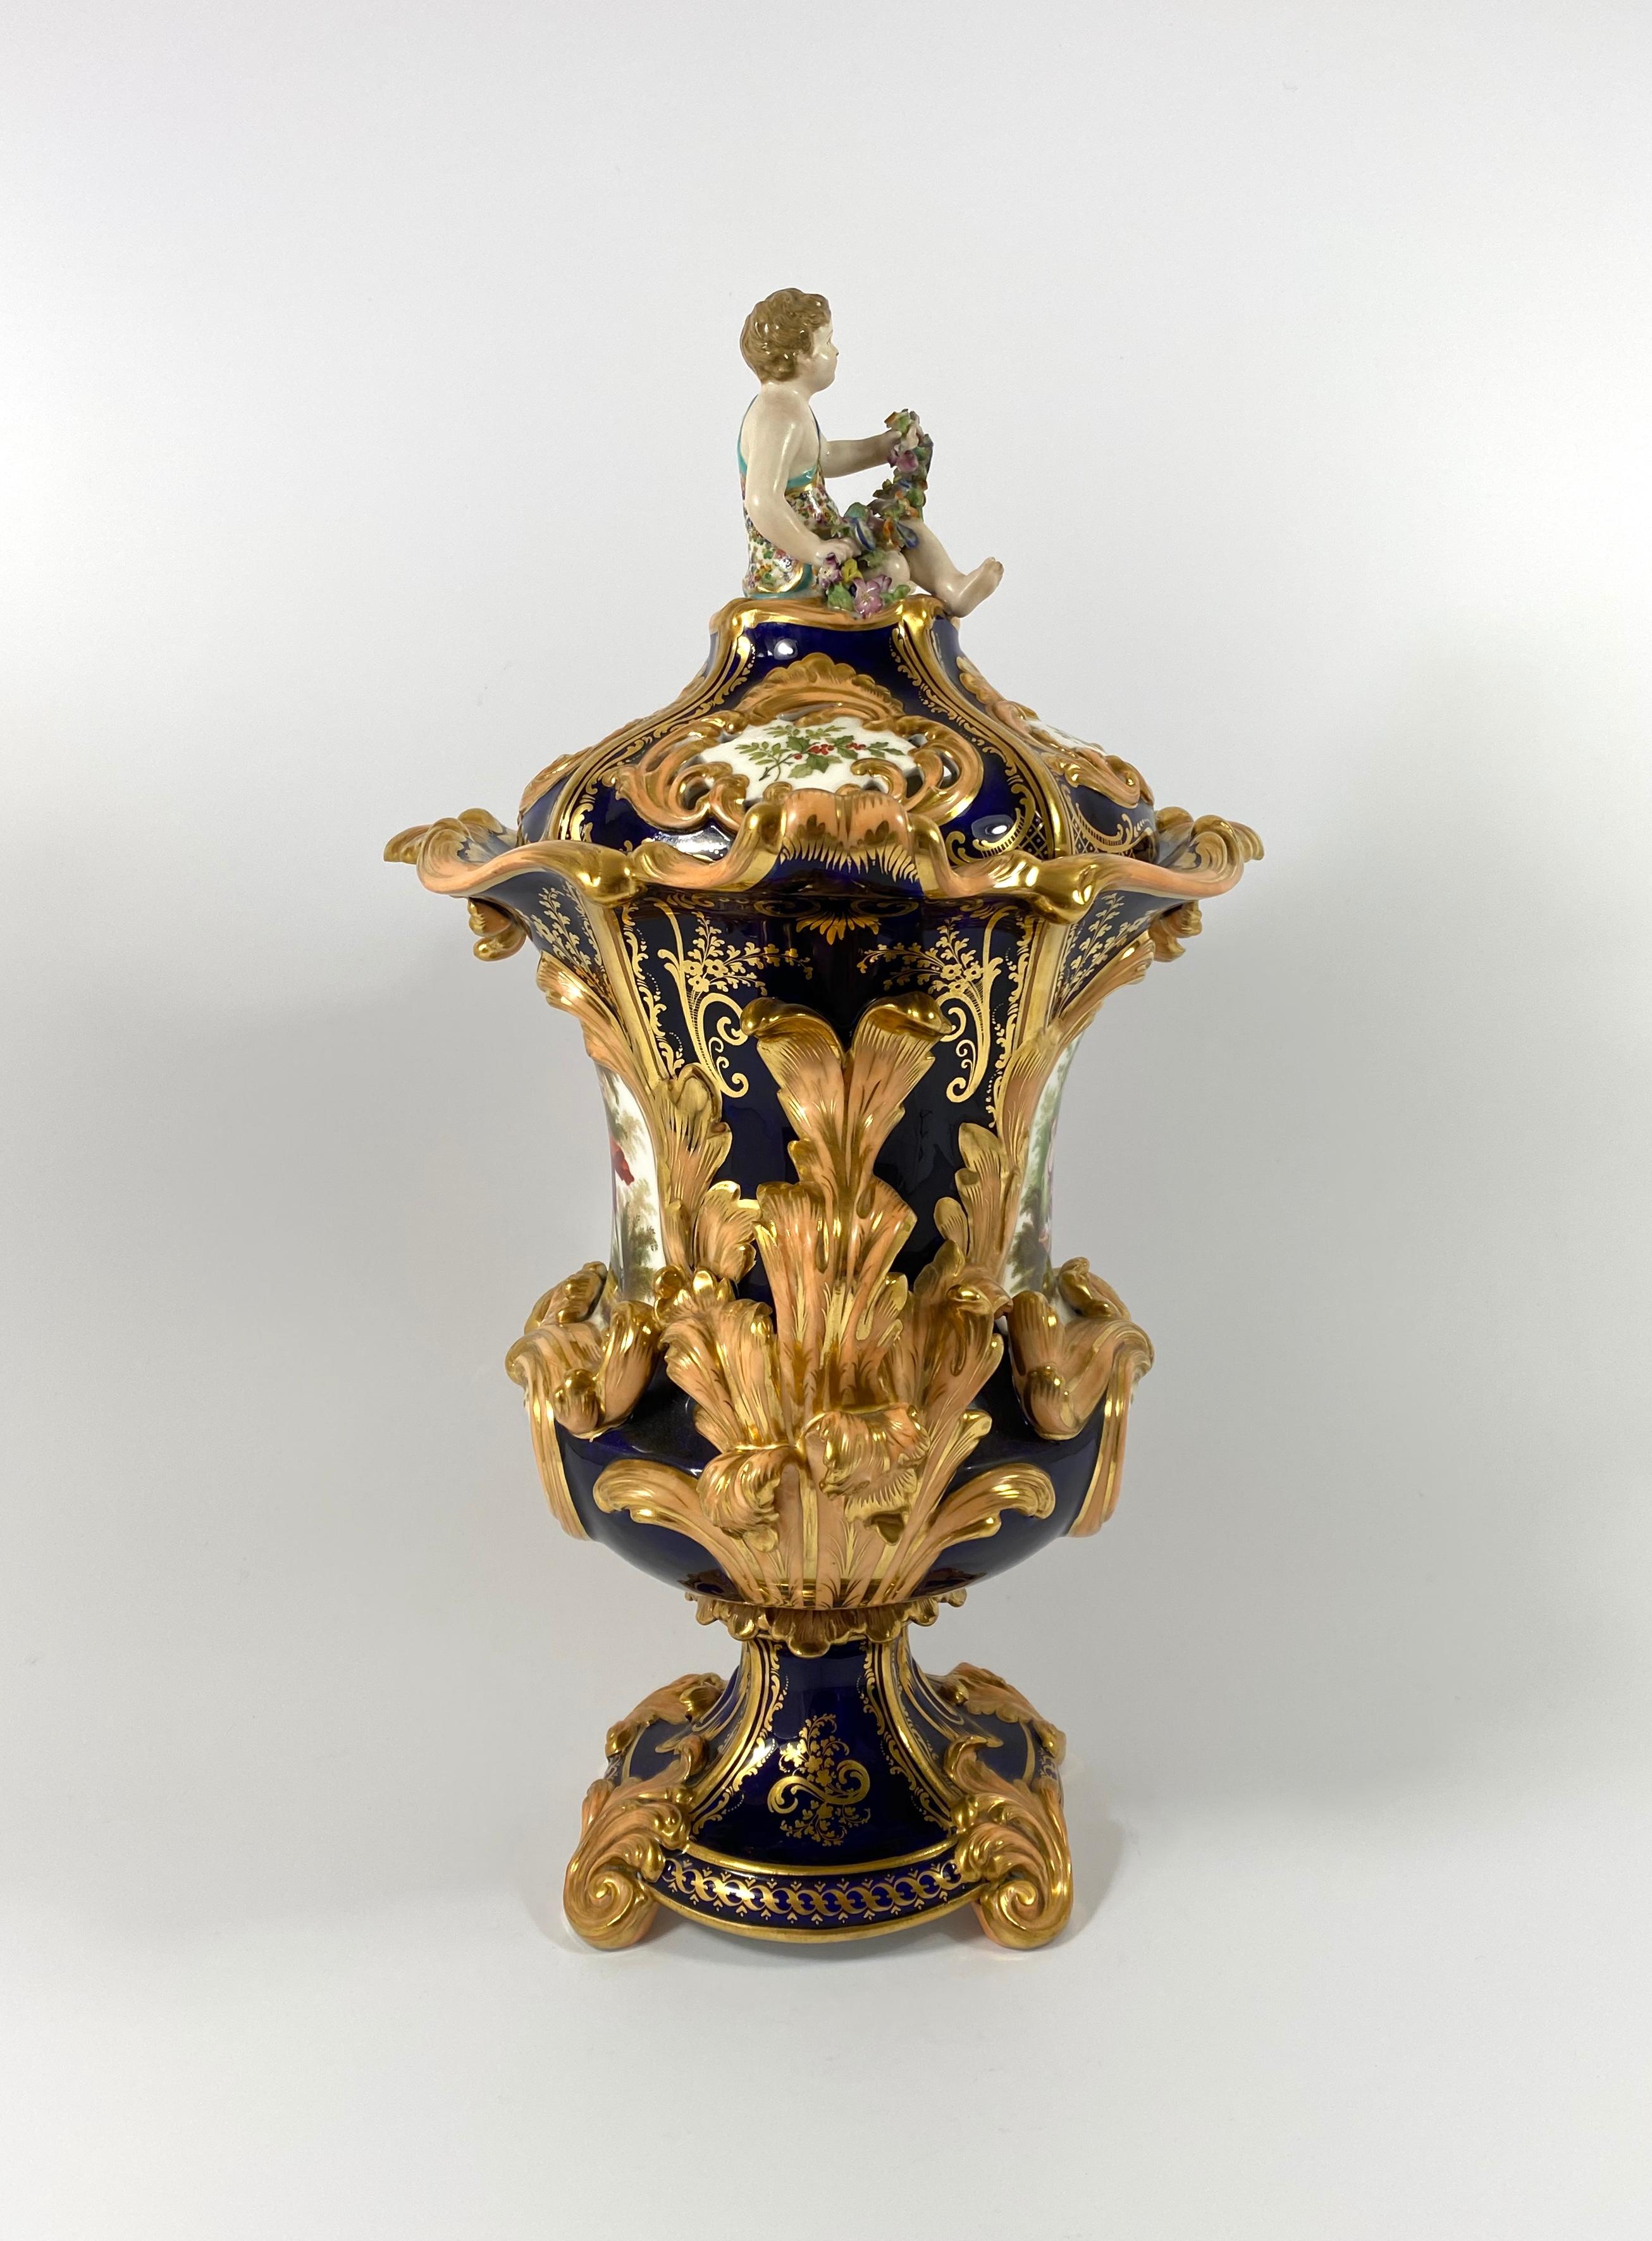 Fine pair Minton porcelain vases & covers, ‘Four Seasons’ c. 1830. 12